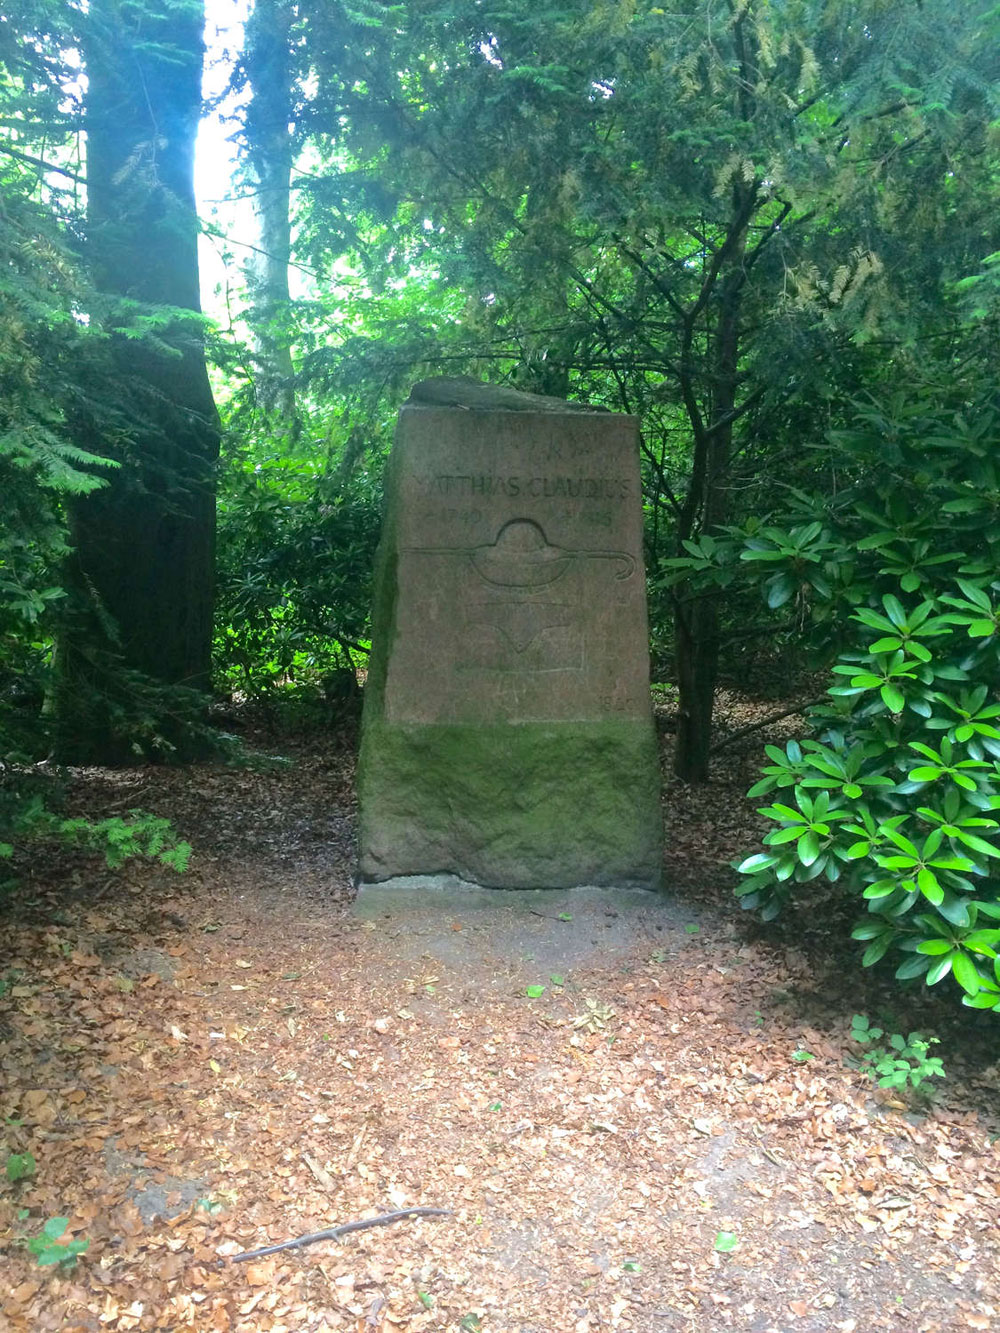 Memorial stone for Matthias Claudius